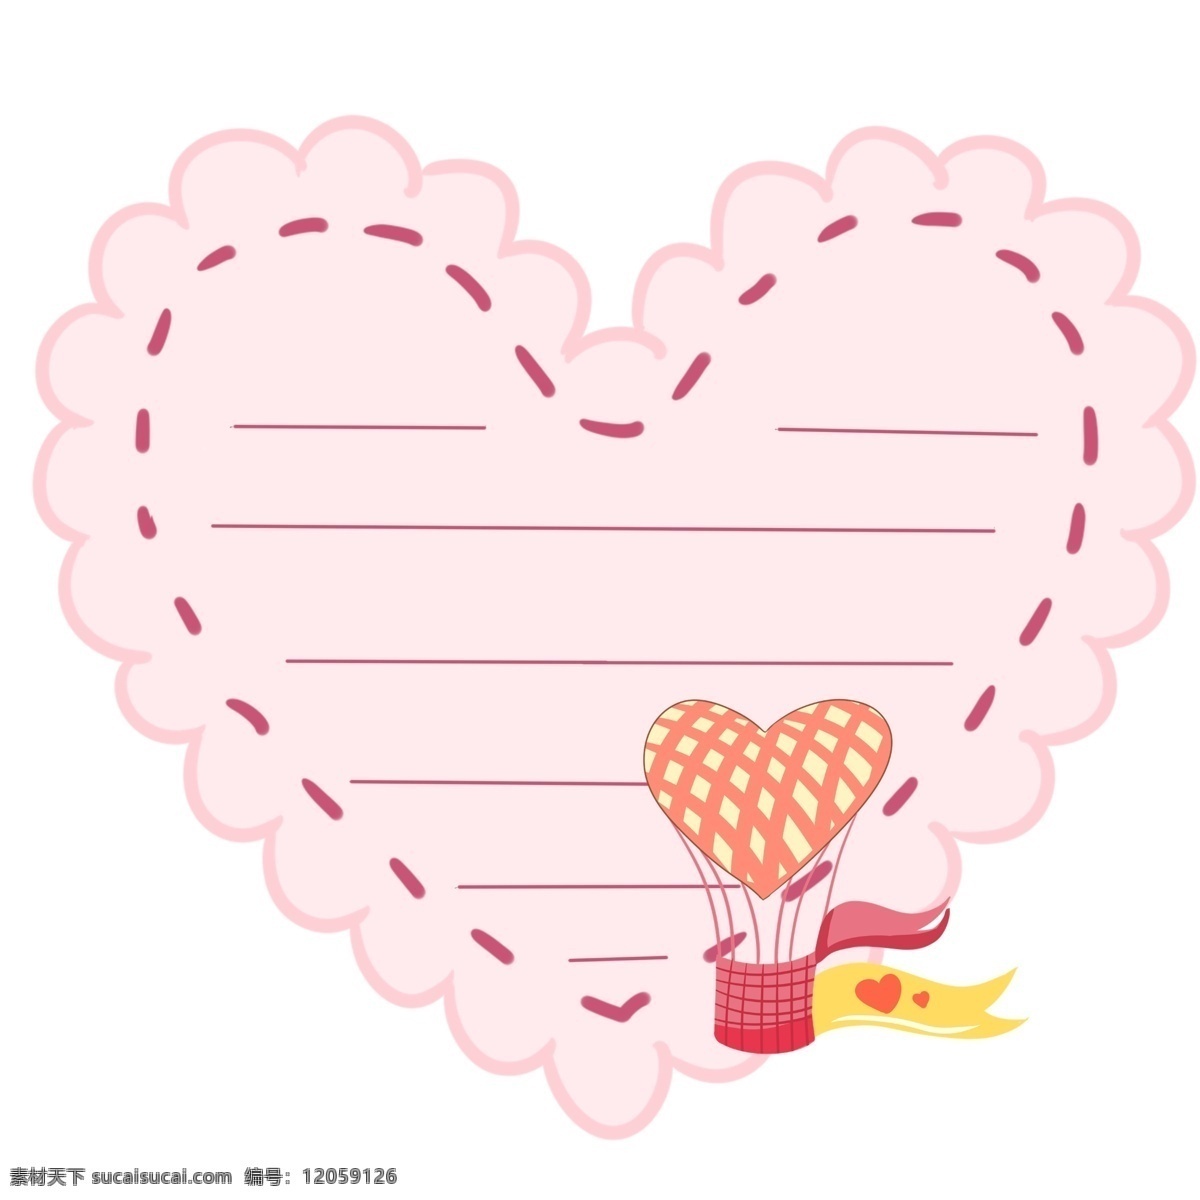 粉色 爱情 边框 插画 漂亮 桃心爱情边框 红色的气球 黄色的丝带 手绘爱情边框